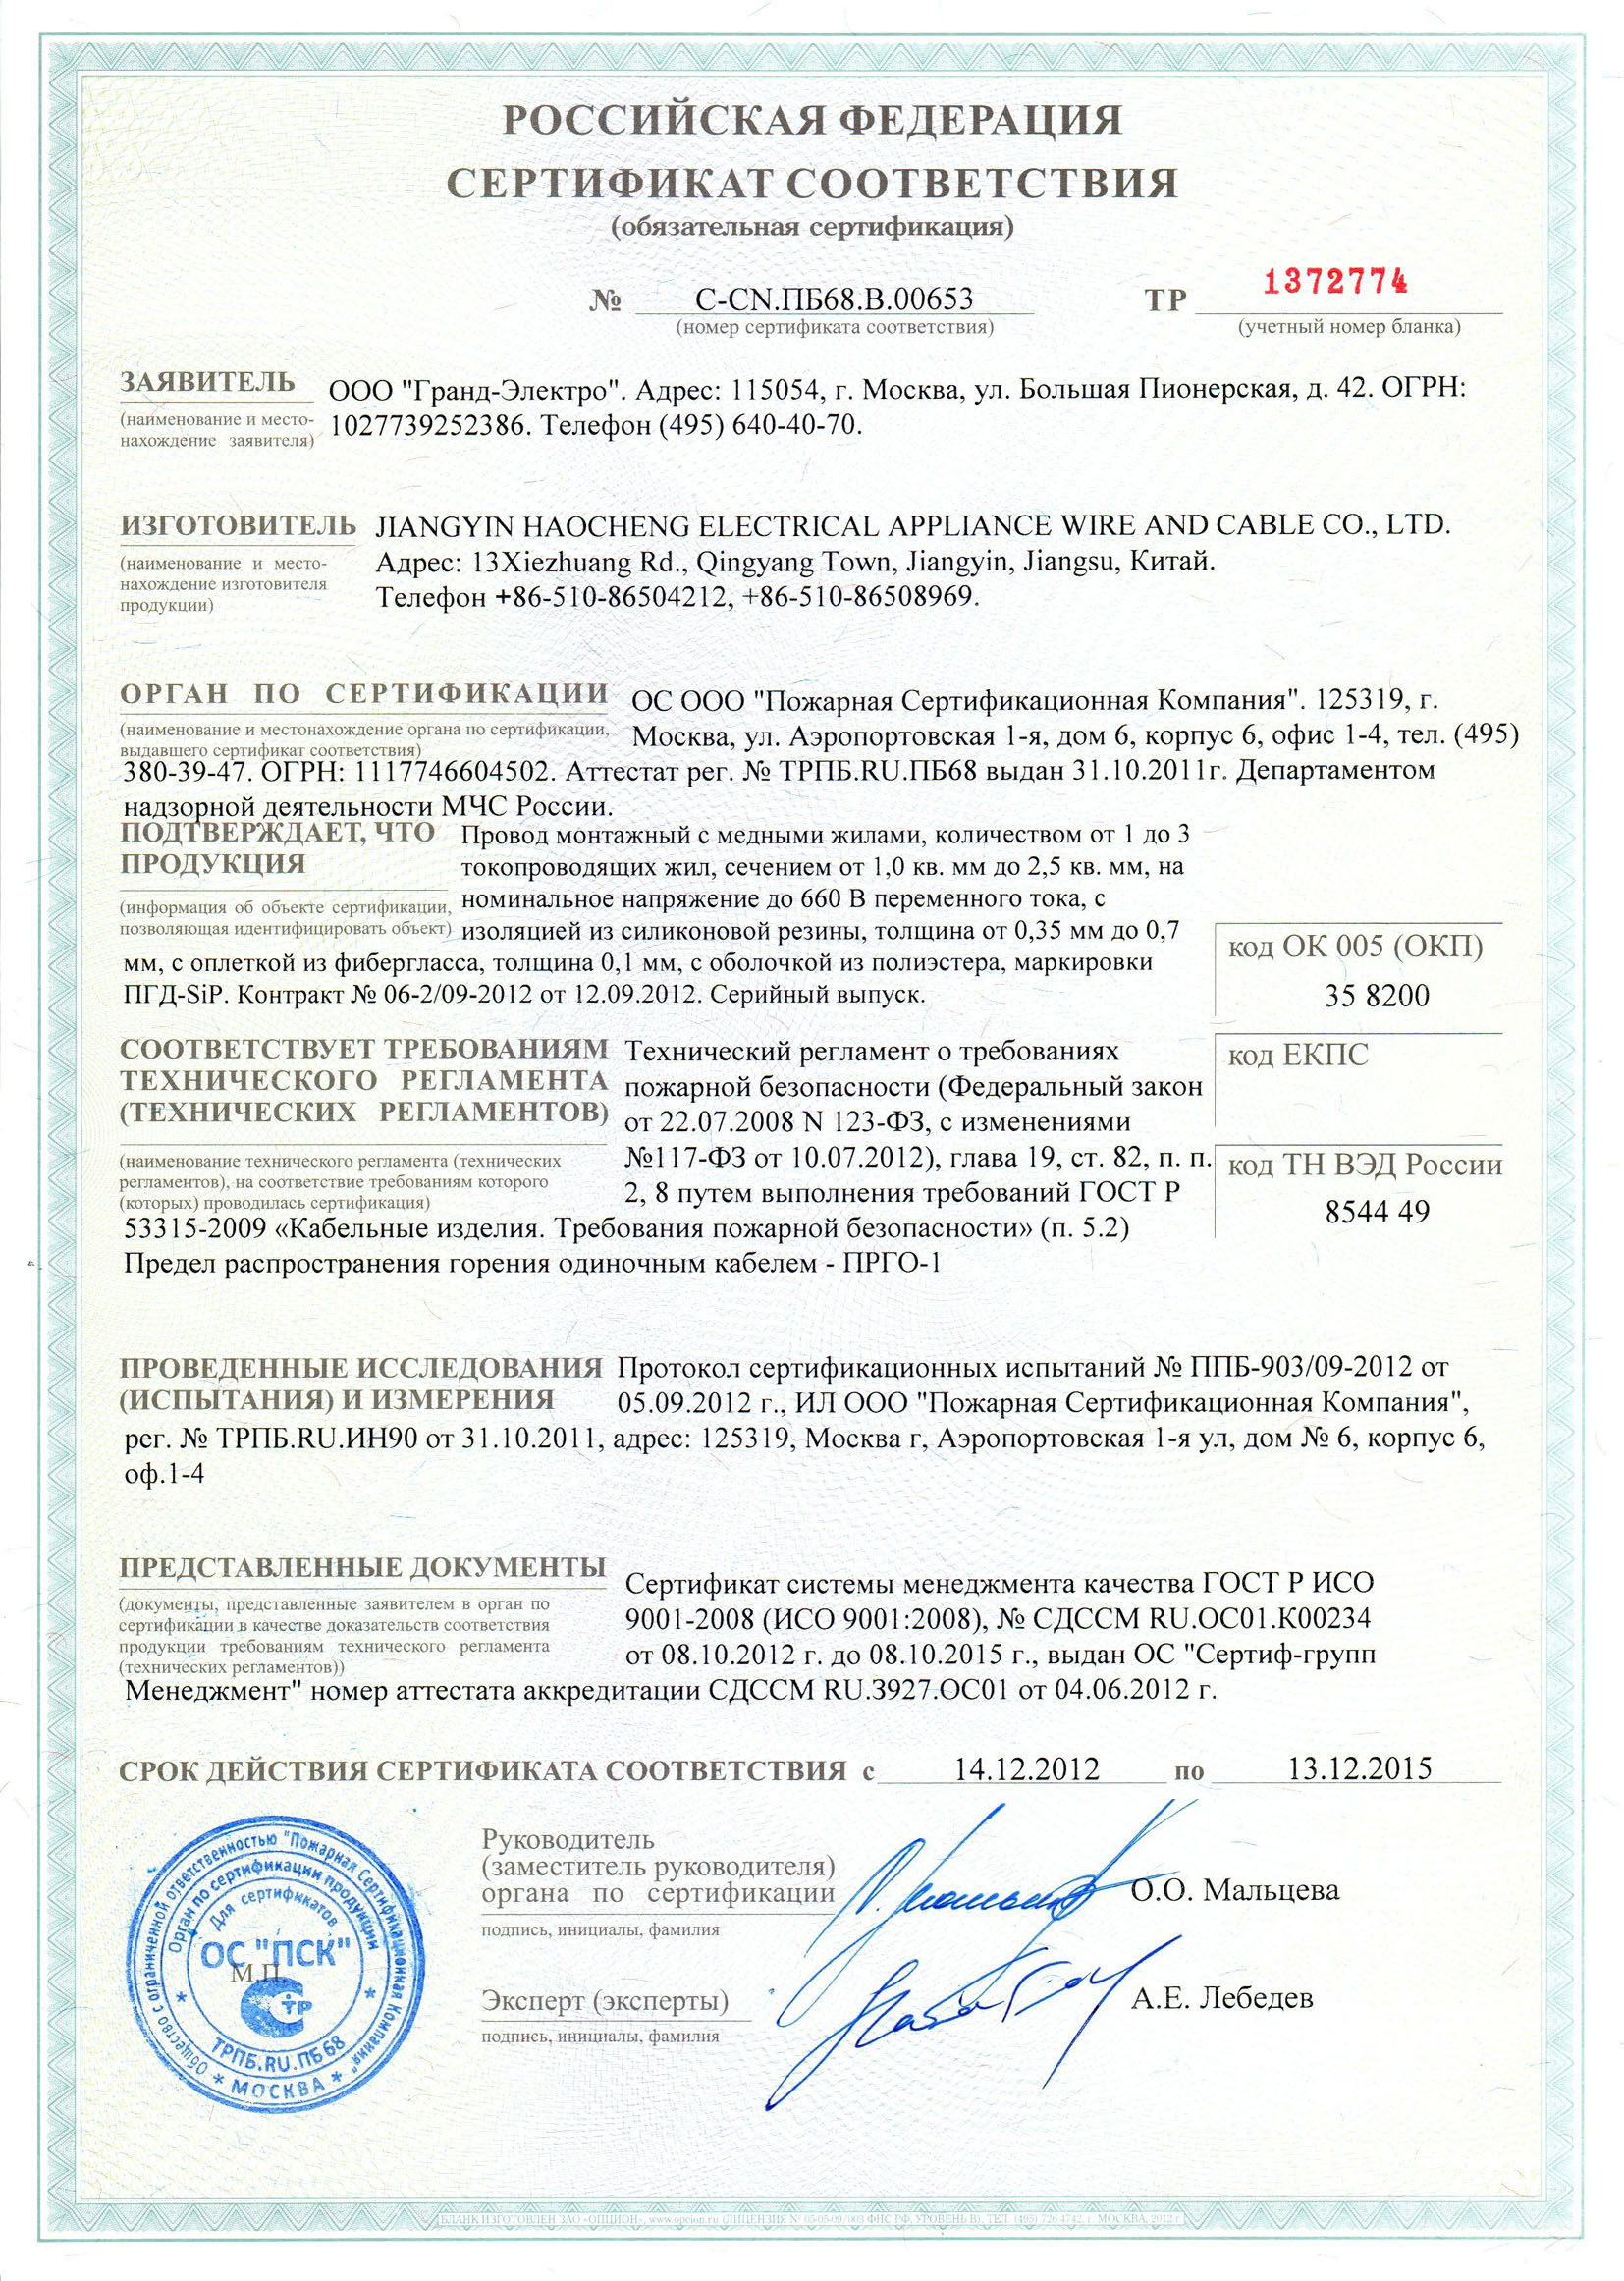 МГШВ сертификат